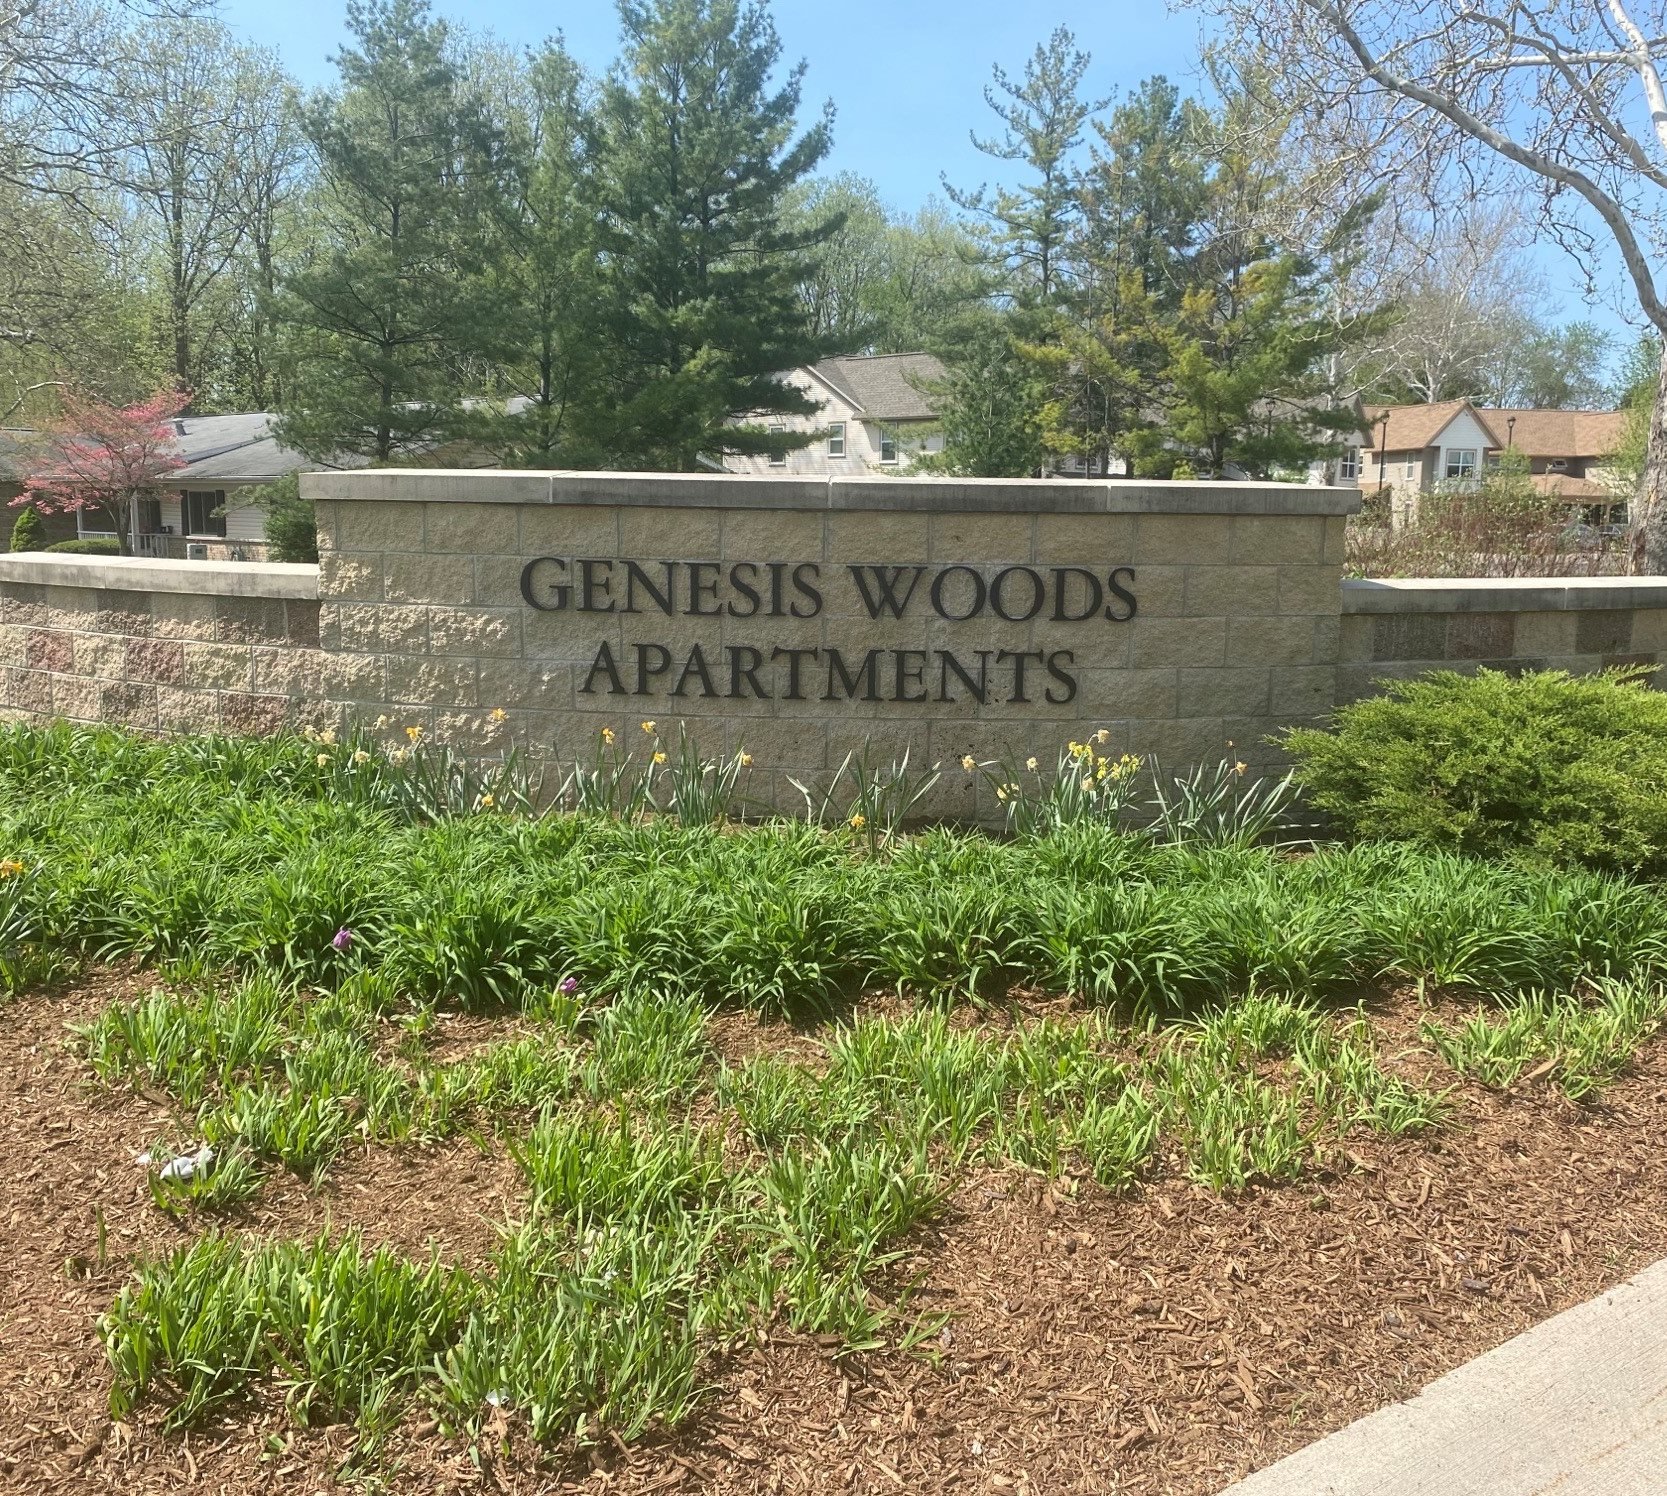 Apartment Community Signage